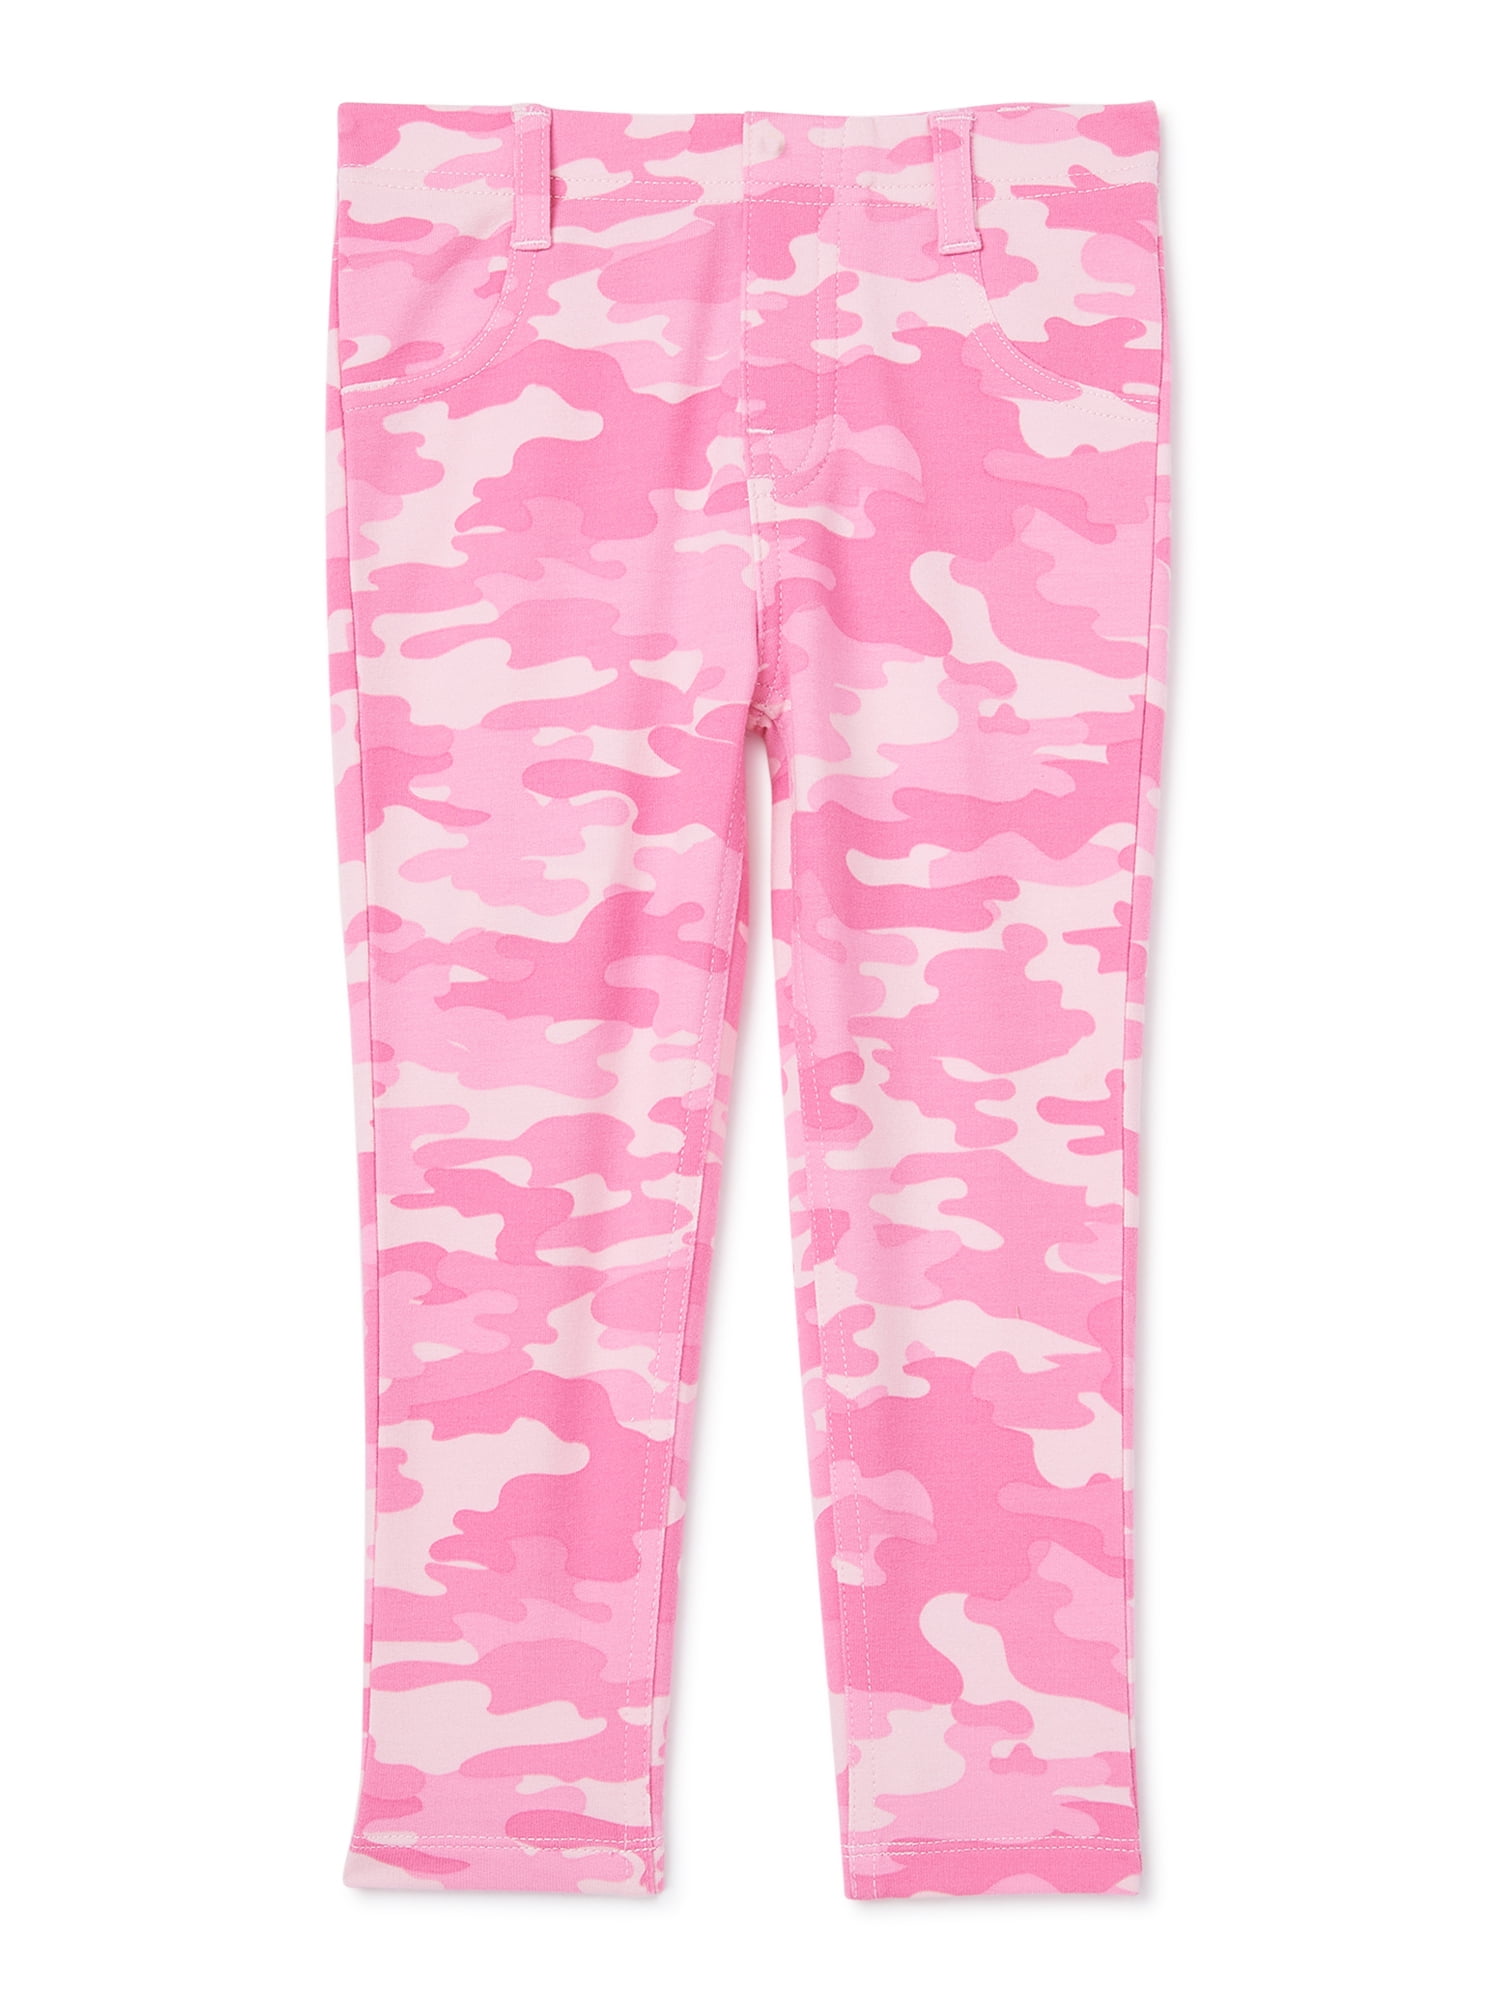 Garanimals Baby & Toddler Girls Pink Camo Print Leggings, Sizes 12M-5T 